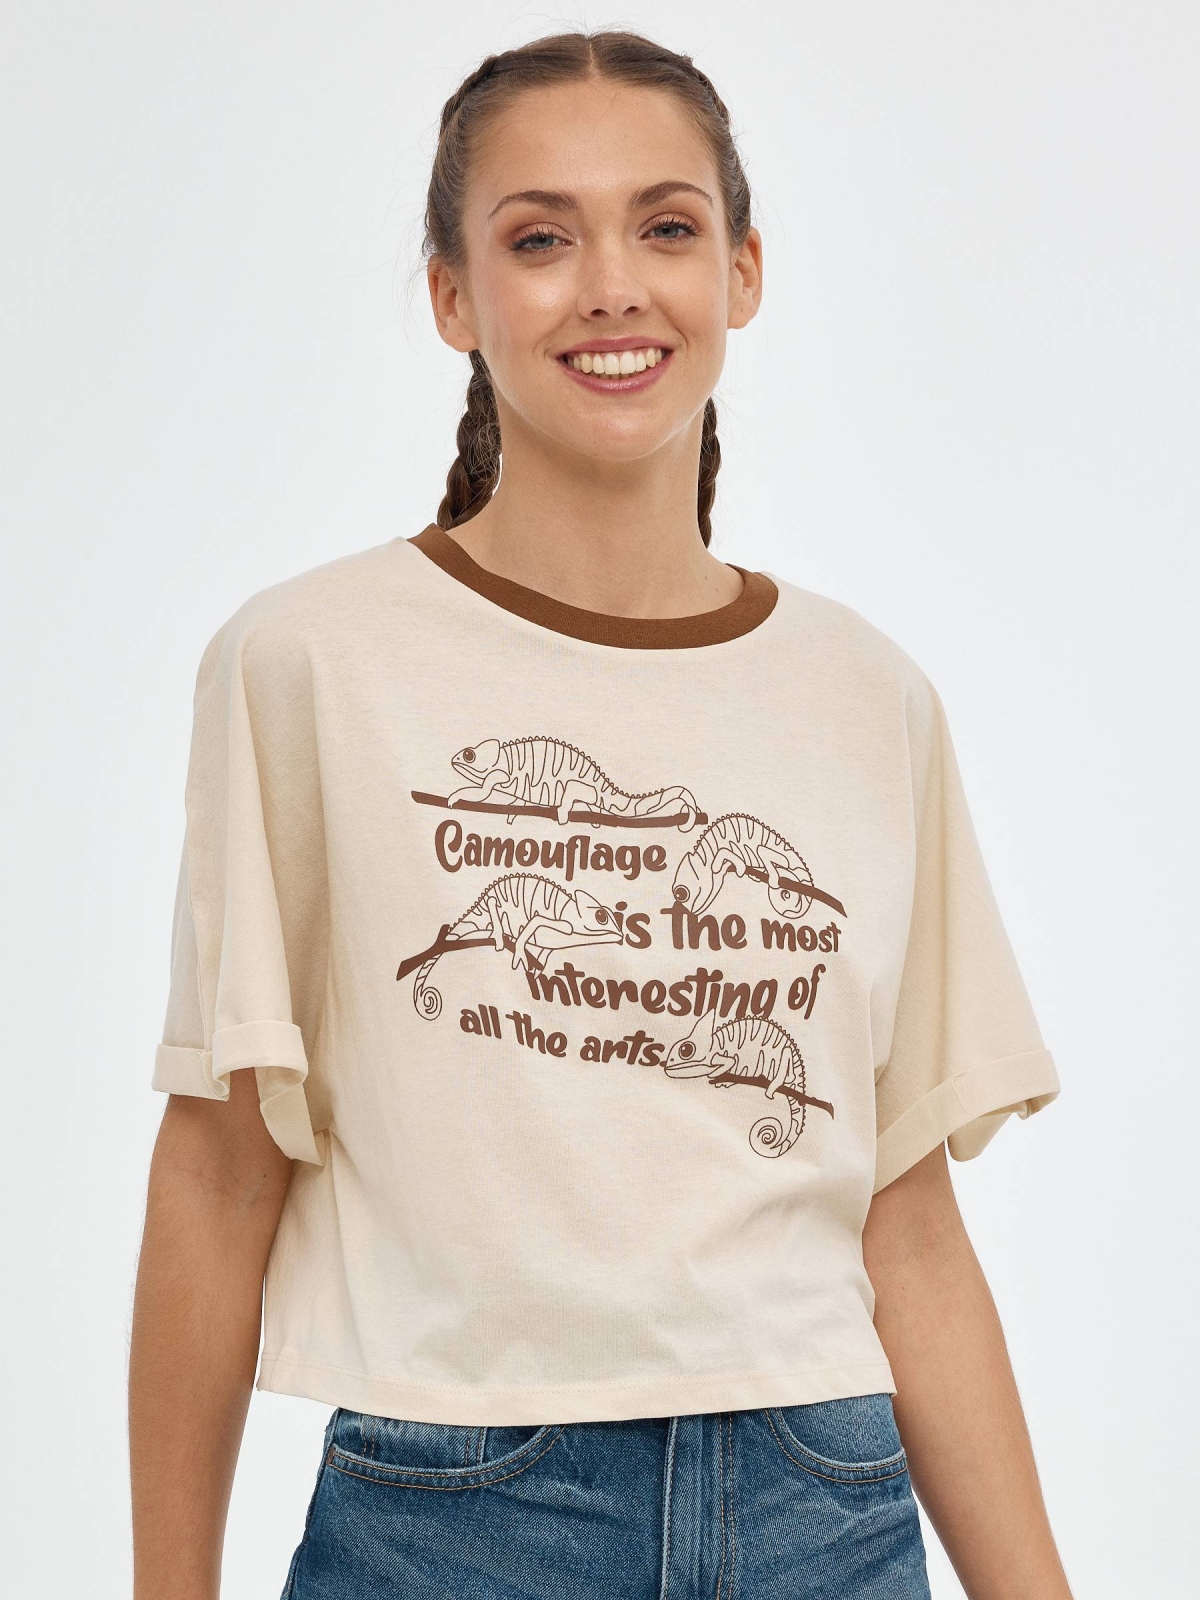 T-shirt crop camaleão areia vista meia frontal